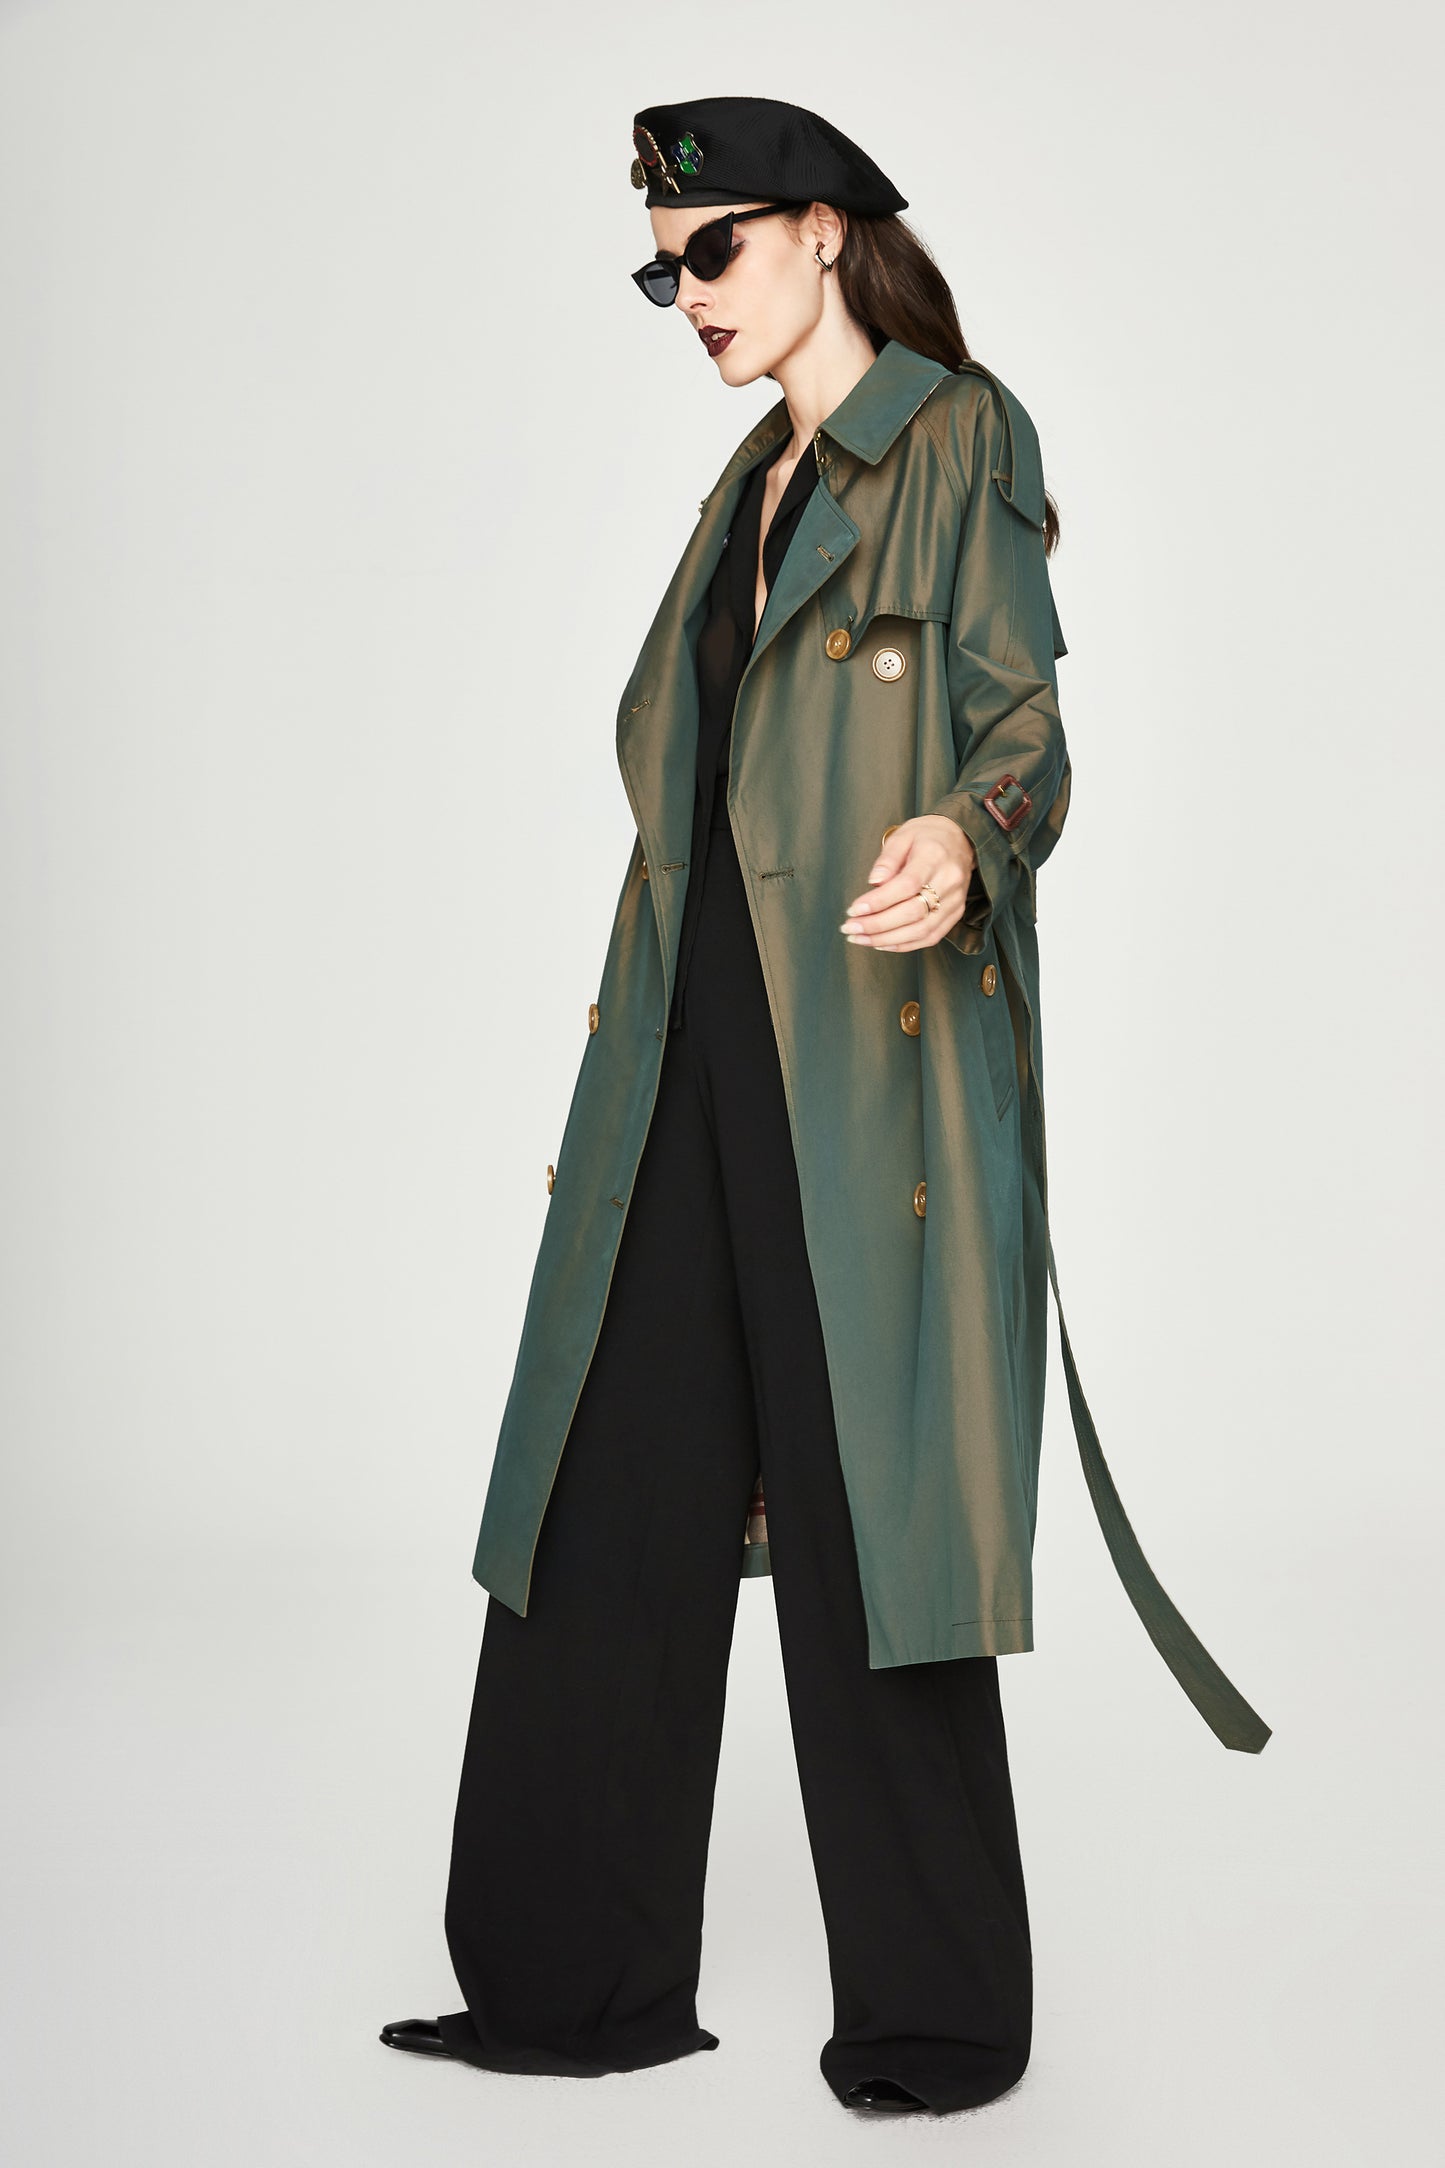 Abbigliamento donna Trench coat lungo doppio petto Cappotto donna Cappotto trench camaleonte Cappotto donna